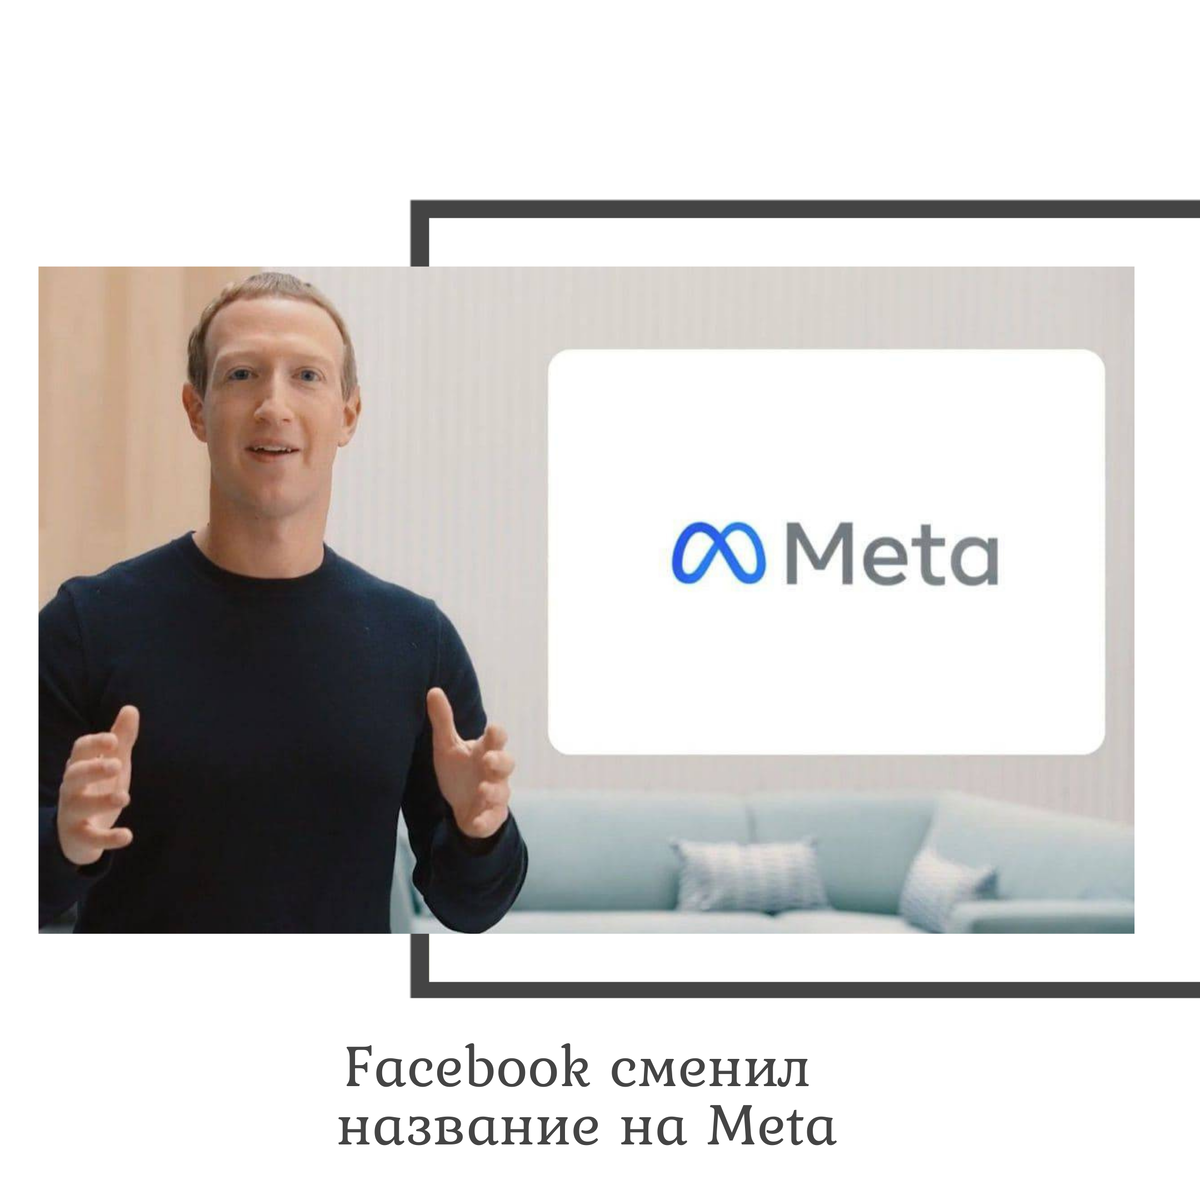 Как называется мета. Фейсбук название. Компания МЕТА Фейсбук. Meta глава компании. Фейсбук сменил название.